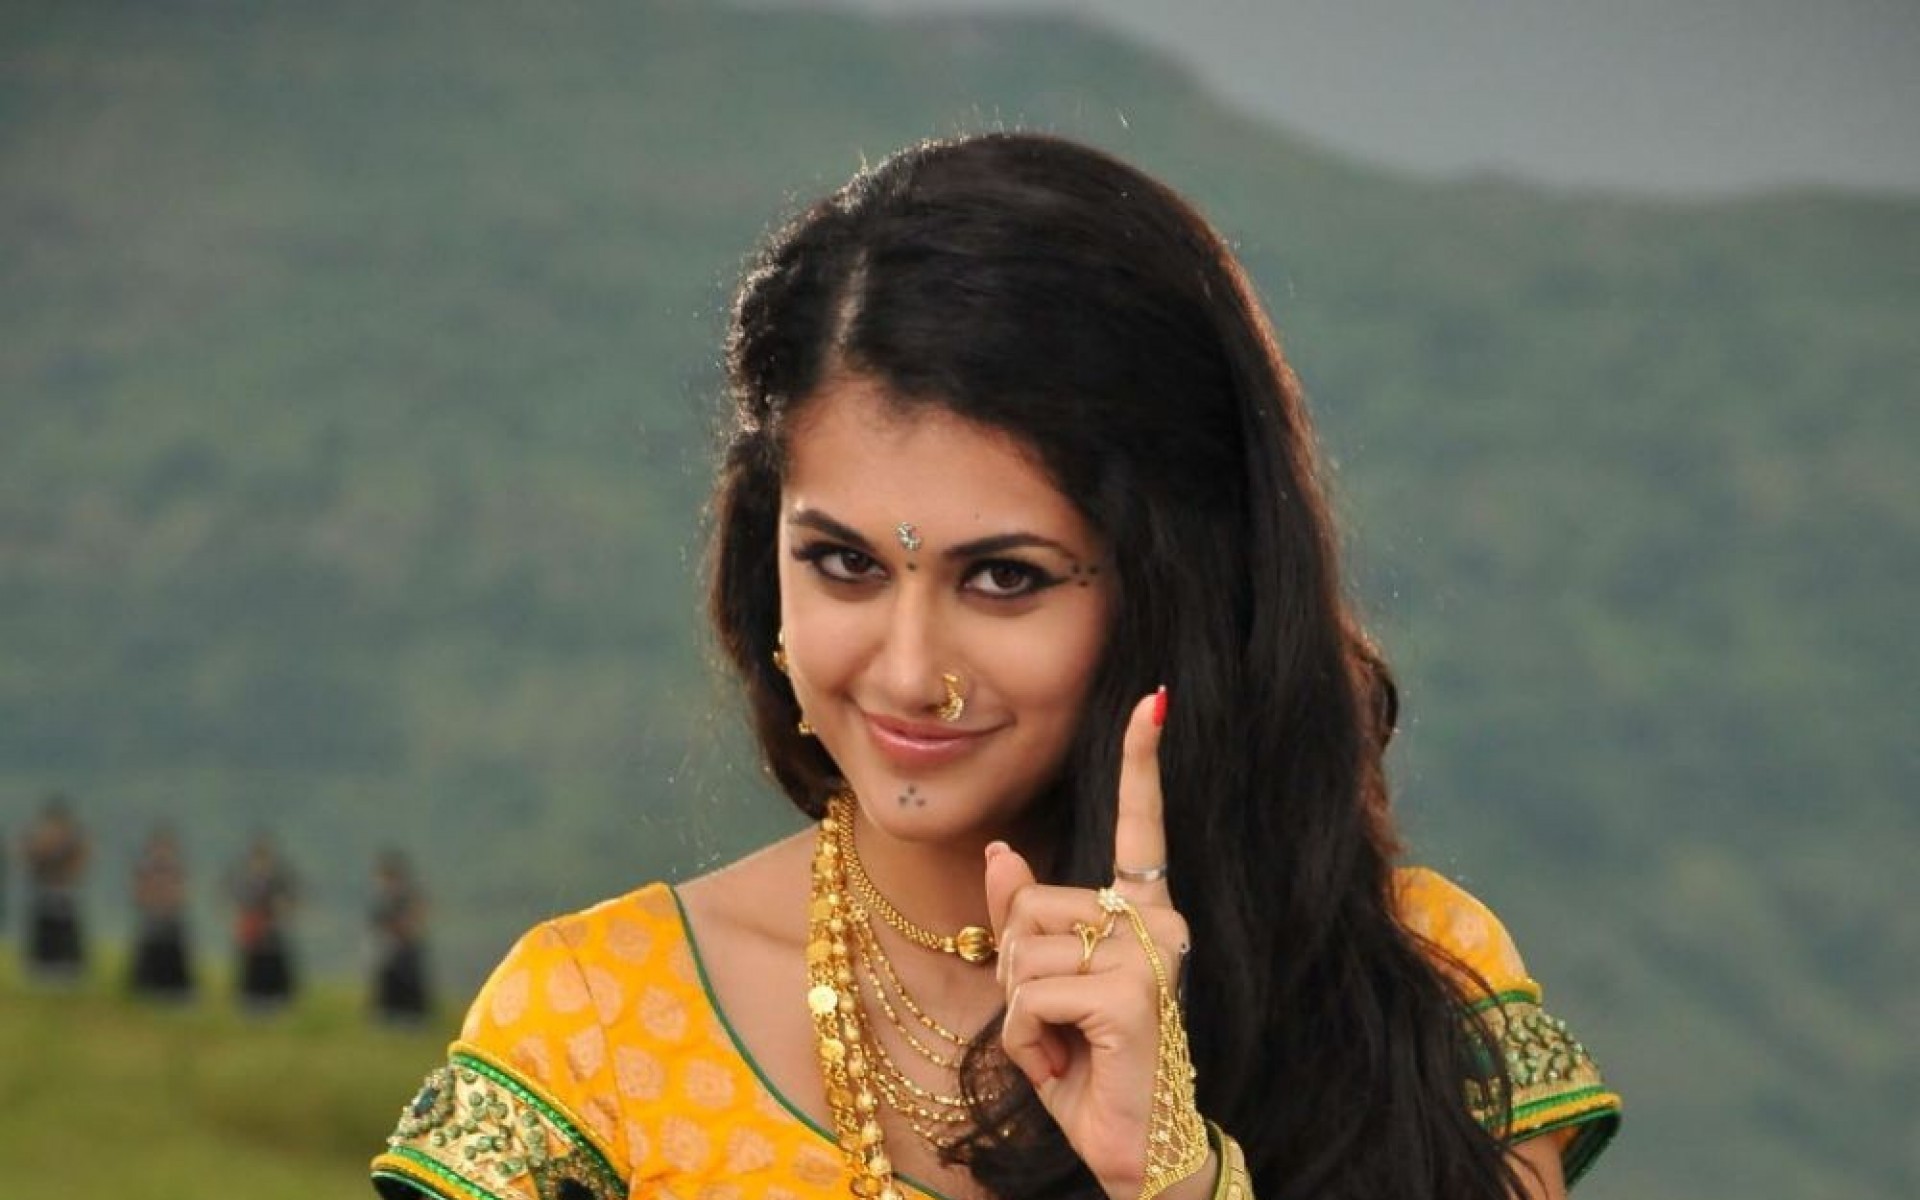 bollywood schauspielerin hd wallpaper 1080p kostenloser download,fotografie,schwarzes haar,lächeln,abdomen,sari